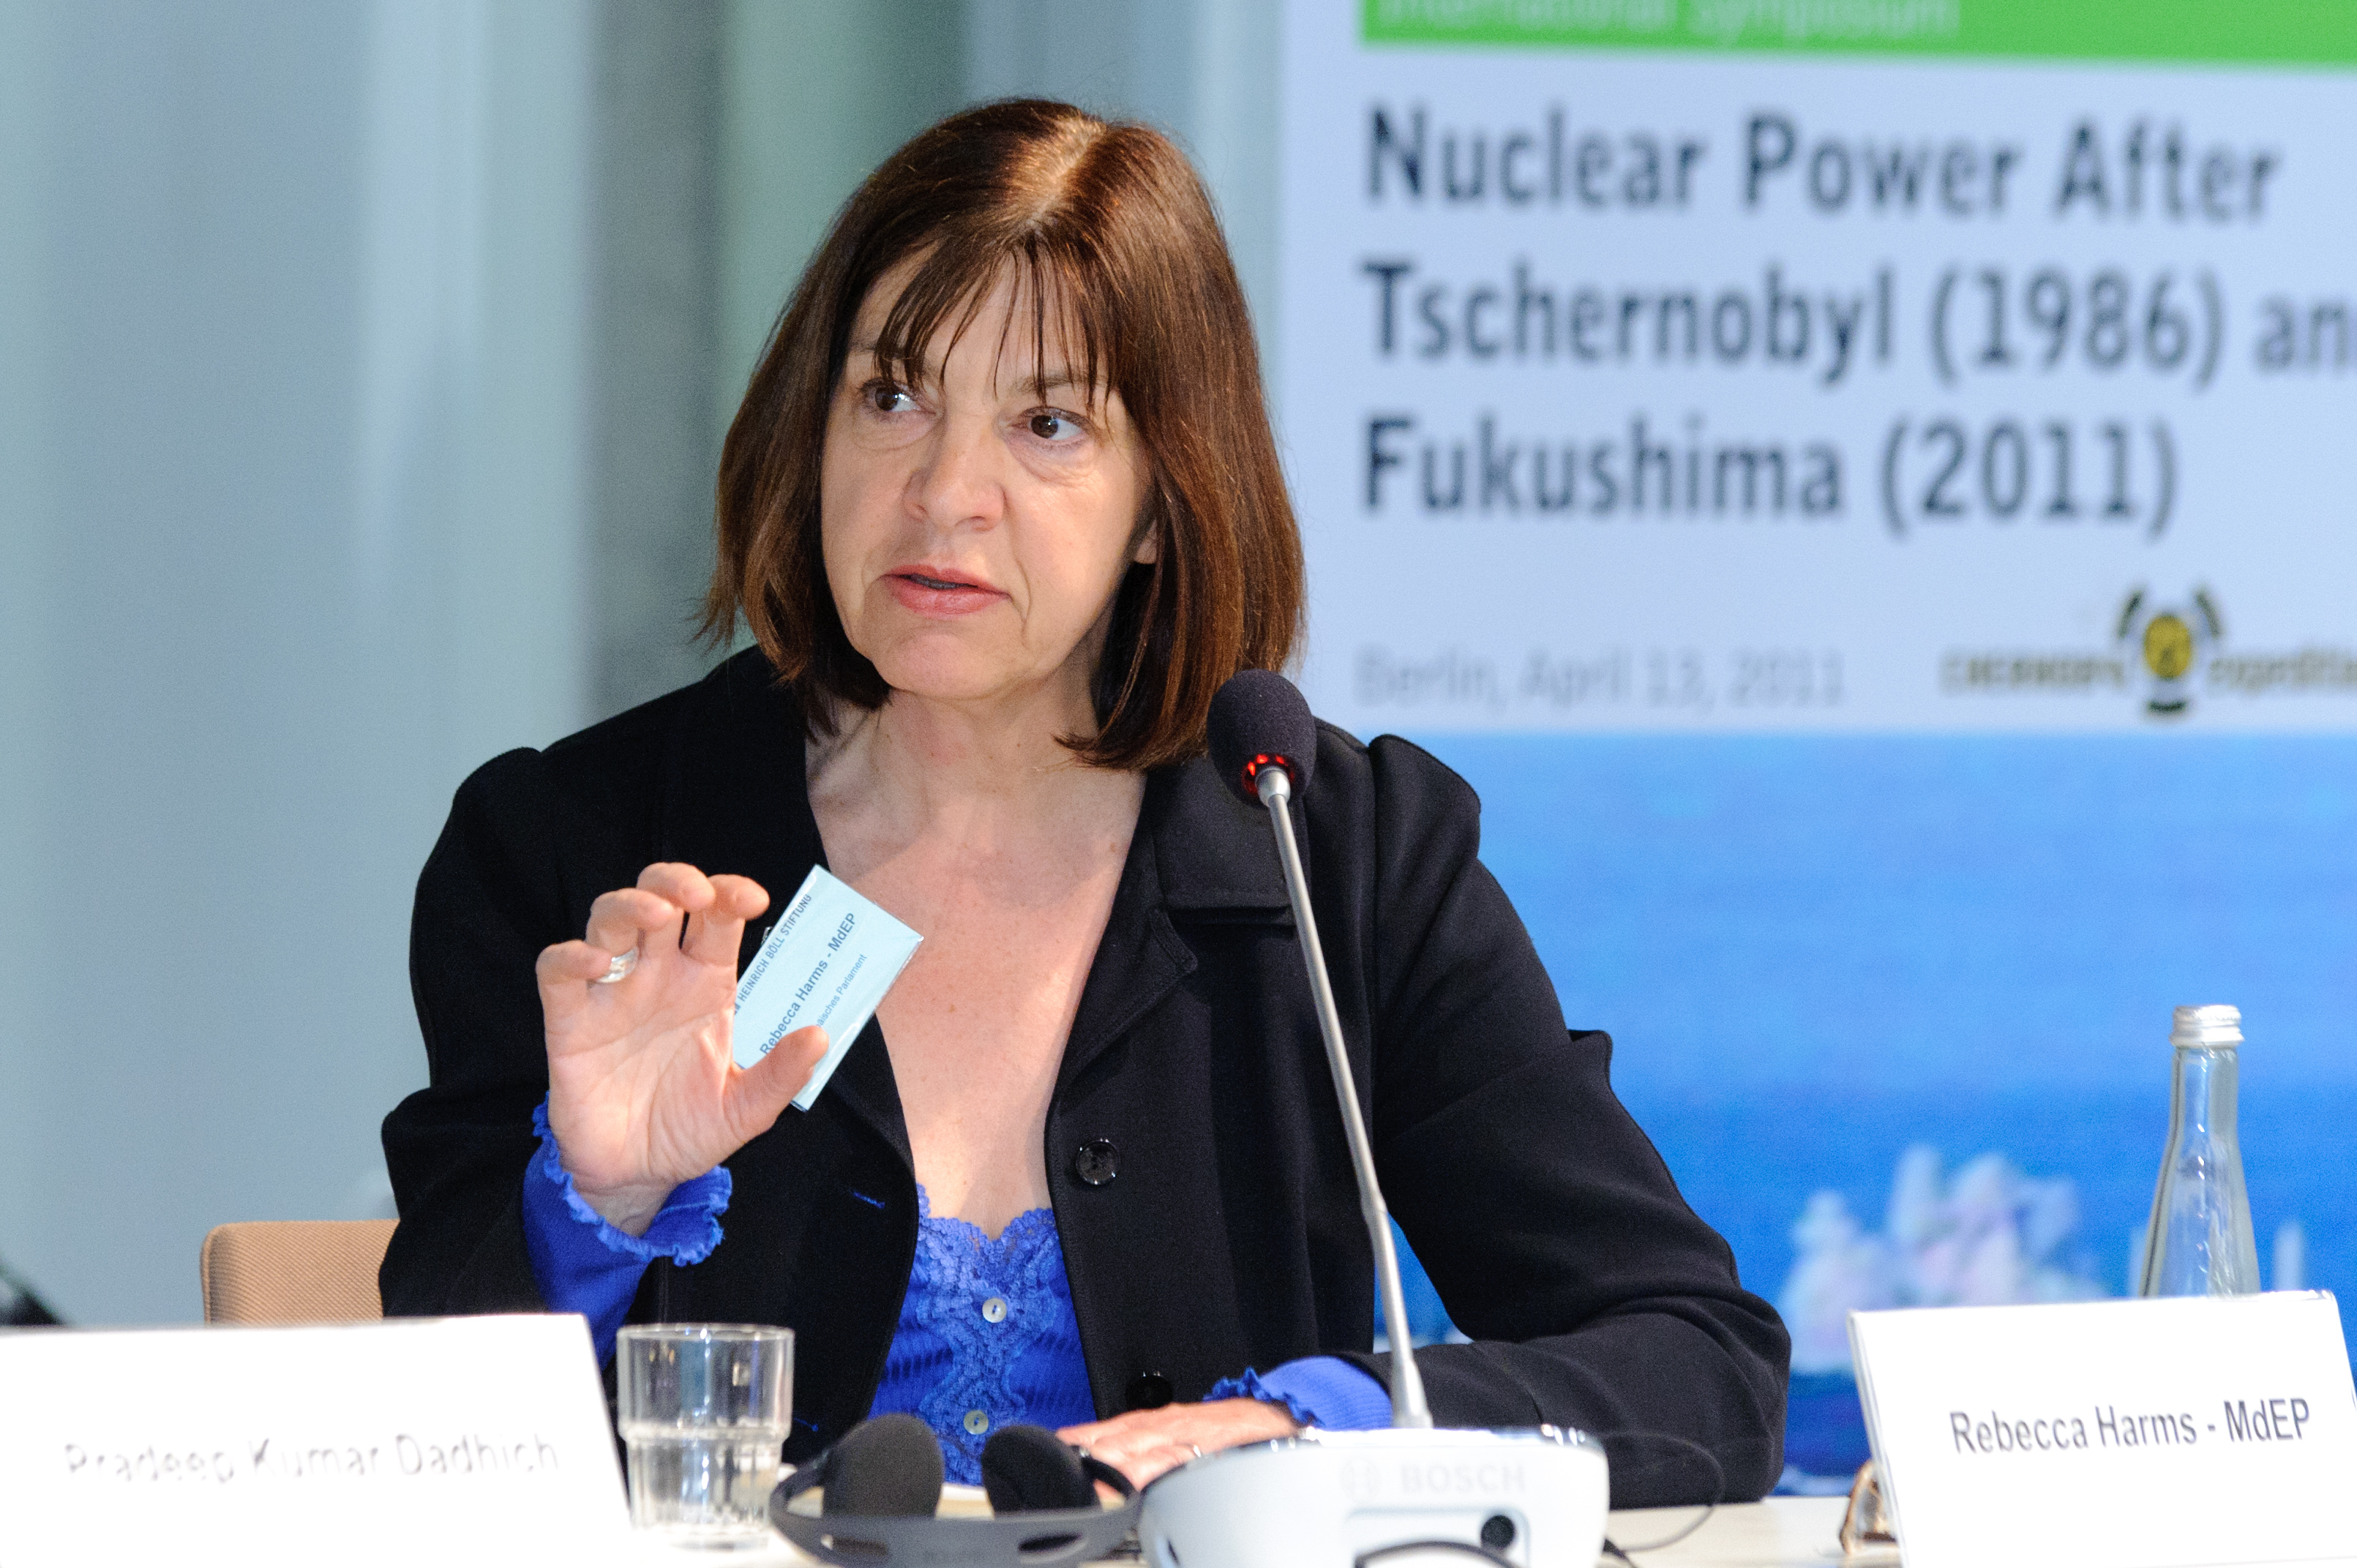 Президент партии "зелёных" в Евросоюзе Ребекка Хармс (Rebecca Harms) и ядерные технологии